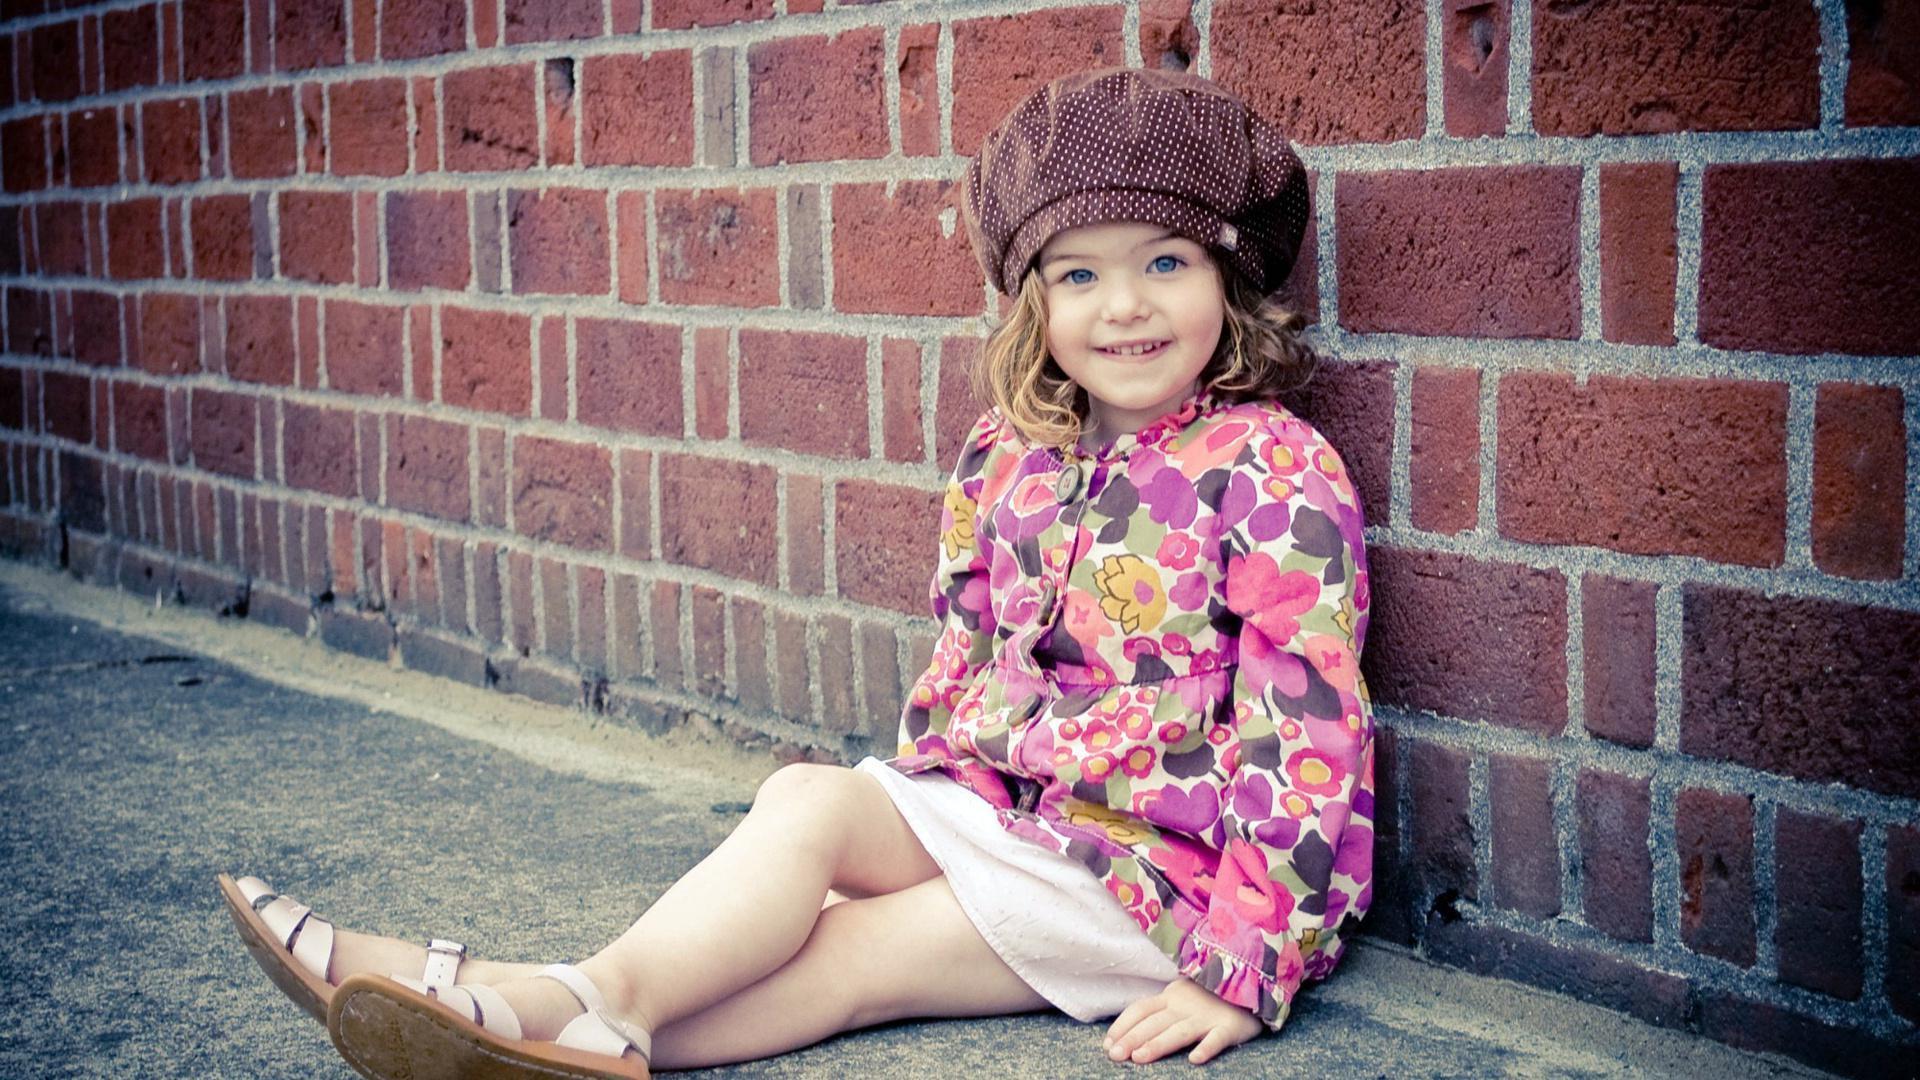 Sweet But Cute Little Girl HD desktop wallpaper, Widescreen, High